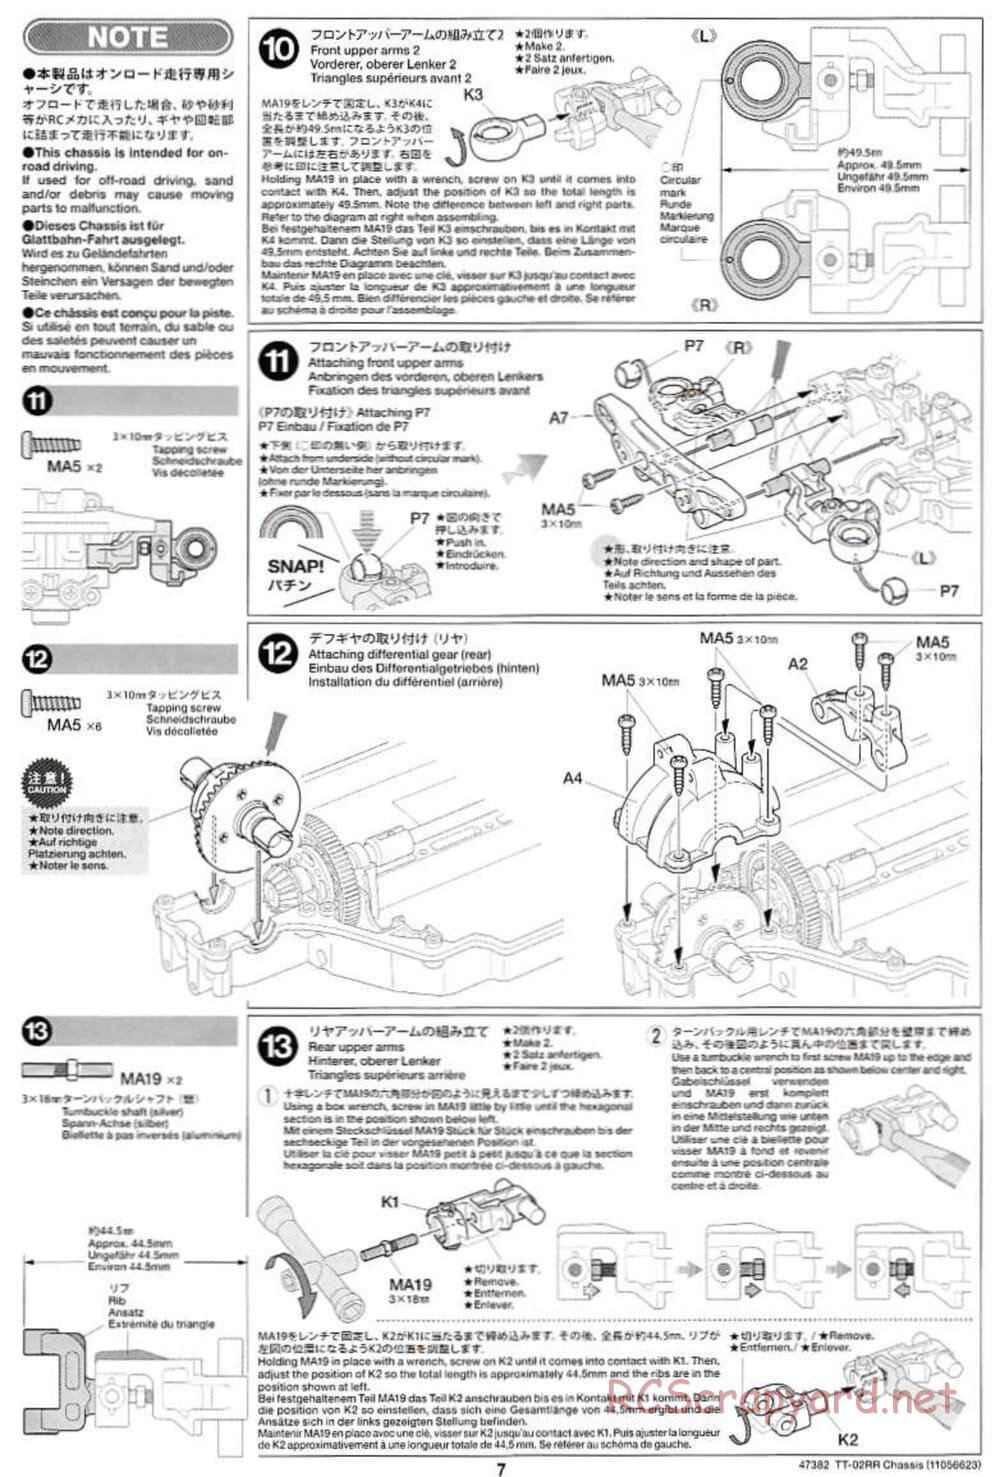 Tamiya - TT-02RR Chassis - Manual - Page 7